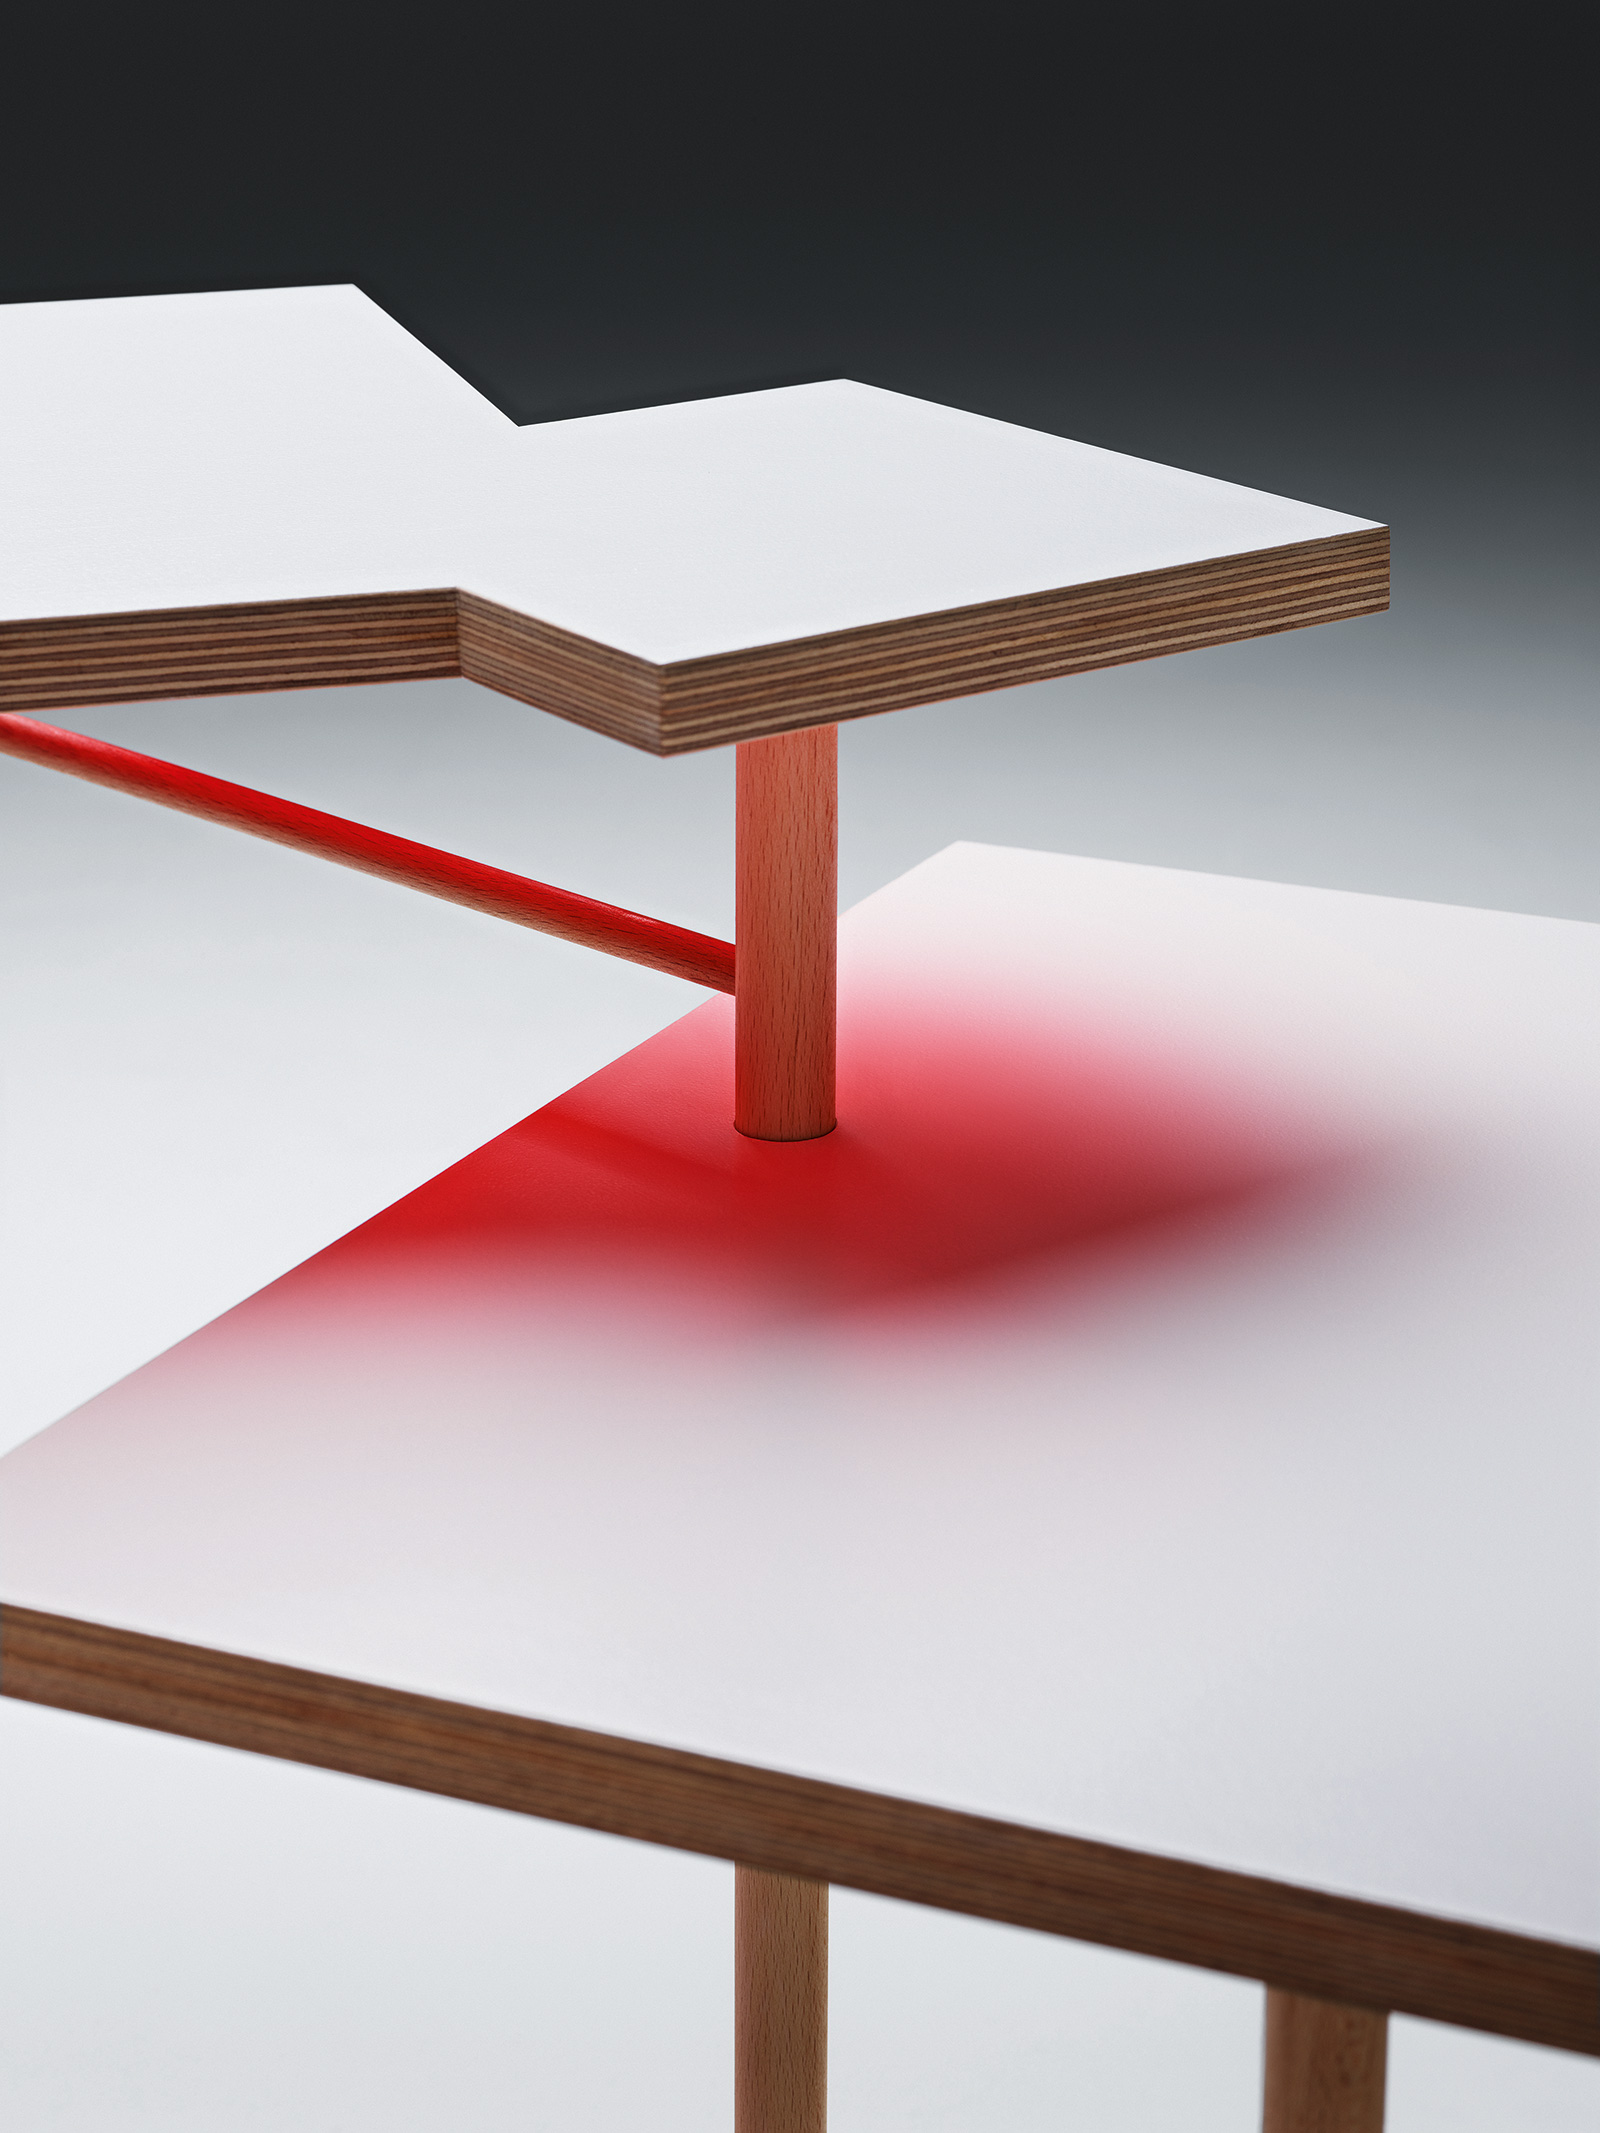 Podľa polohy dosiek stola a dopadu svetla odrážajú tieto plochy rôzne svoju farbu na okolitý materiál.